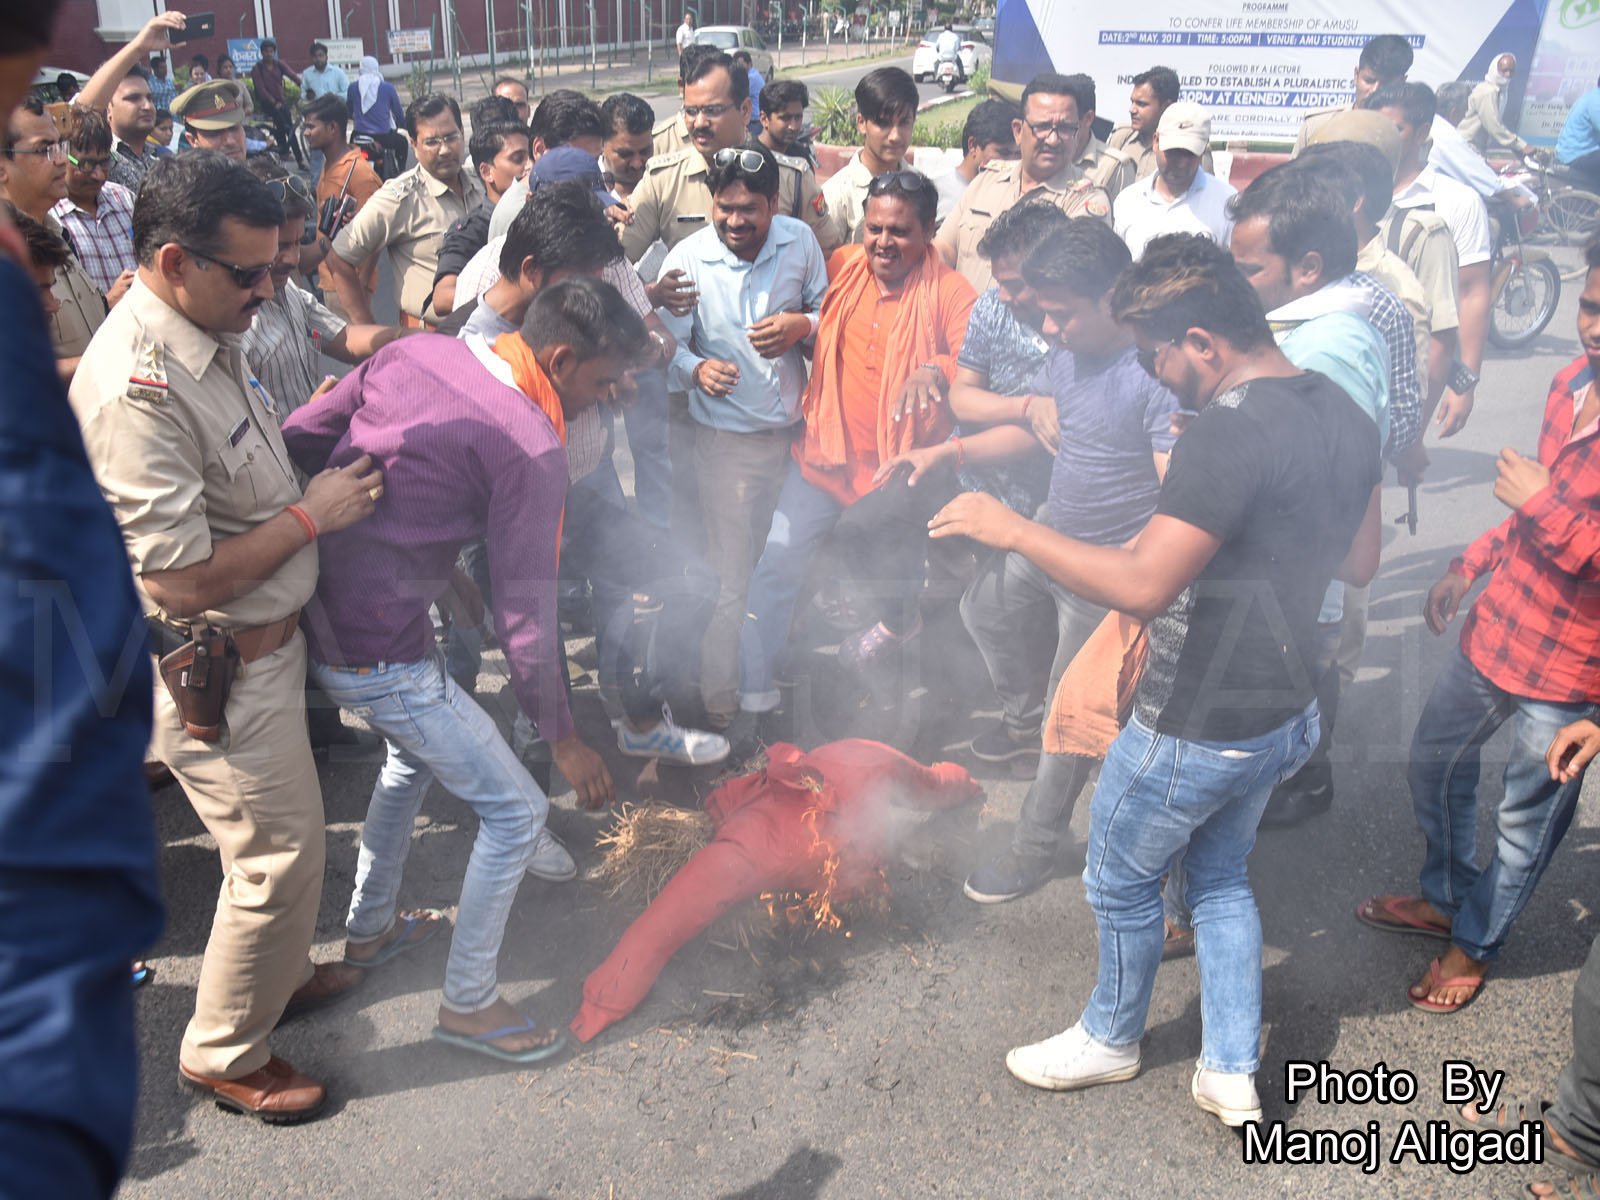 #Aligarh : पुलिस चाहती तो रुक सकता था #AMU बवाल, हिंदूवादियों को रोकने में नही दिखाई सख्ती